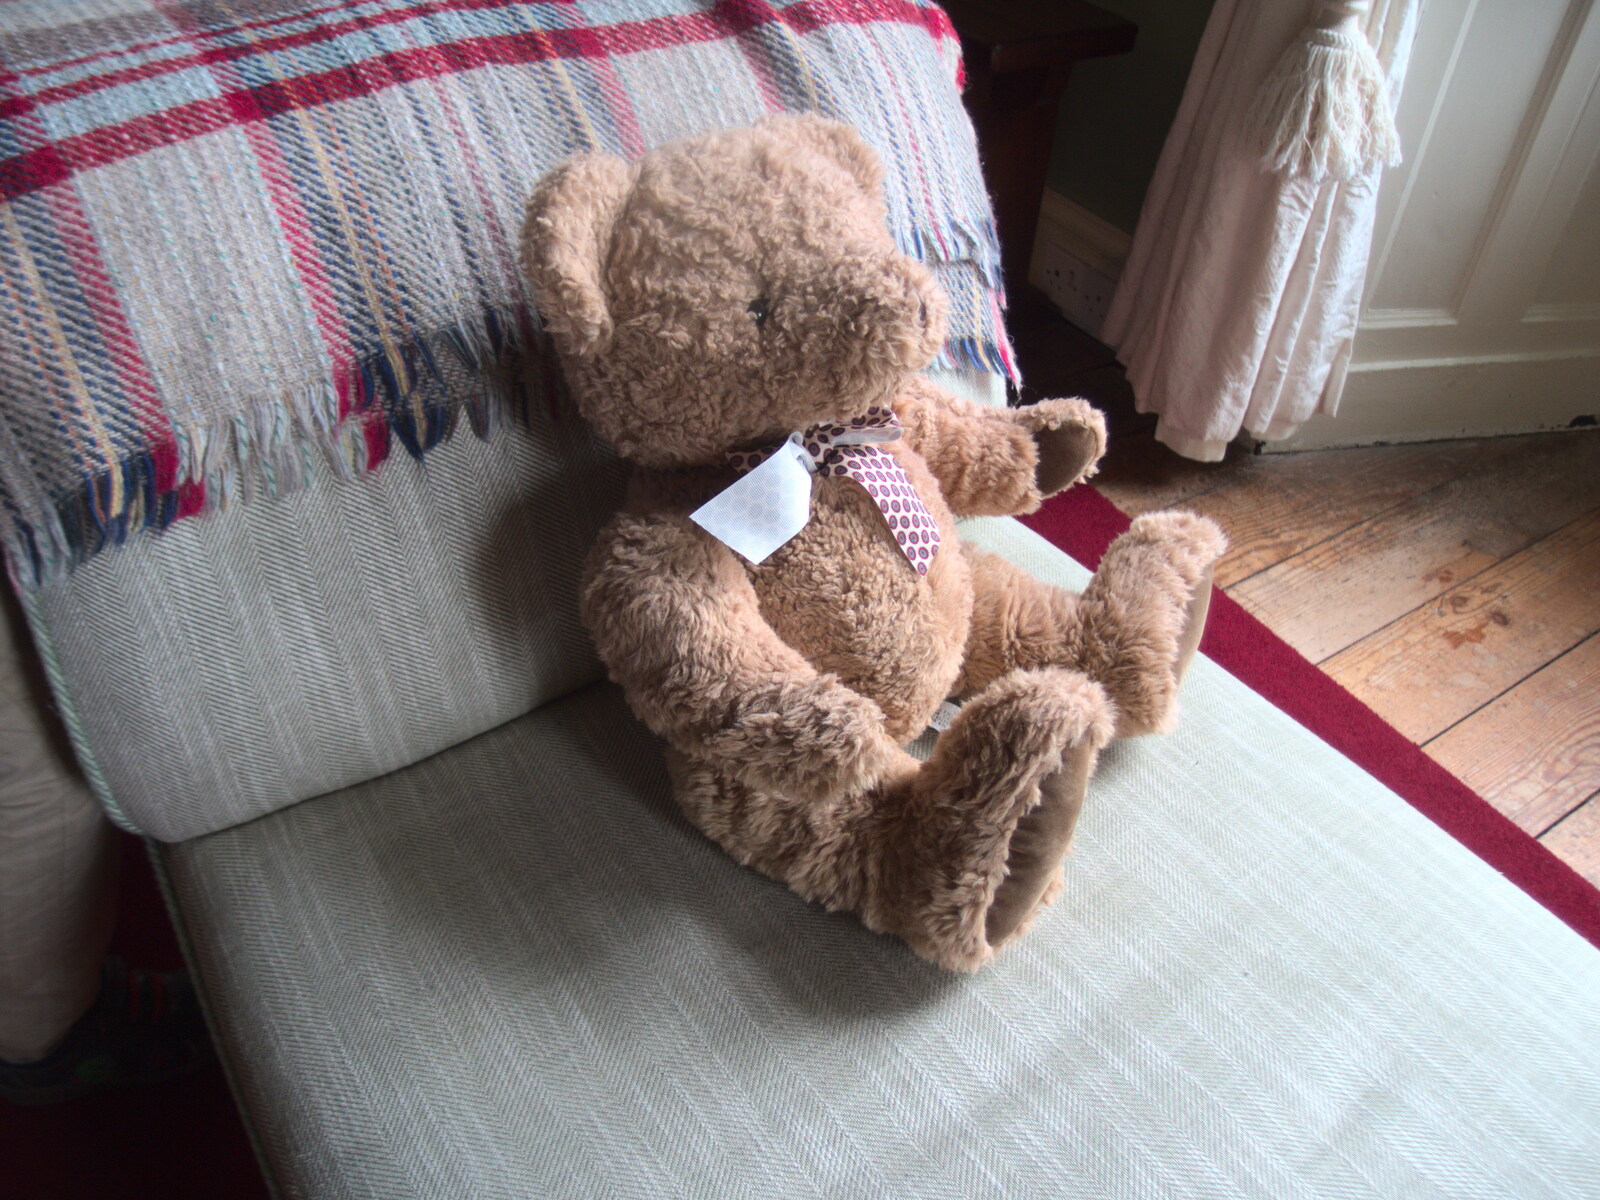 A teddy bear on an armchair from Florence Court and a Postcard from Sligo, Fermanagh and Sligo, Ireland - 21st August 2019